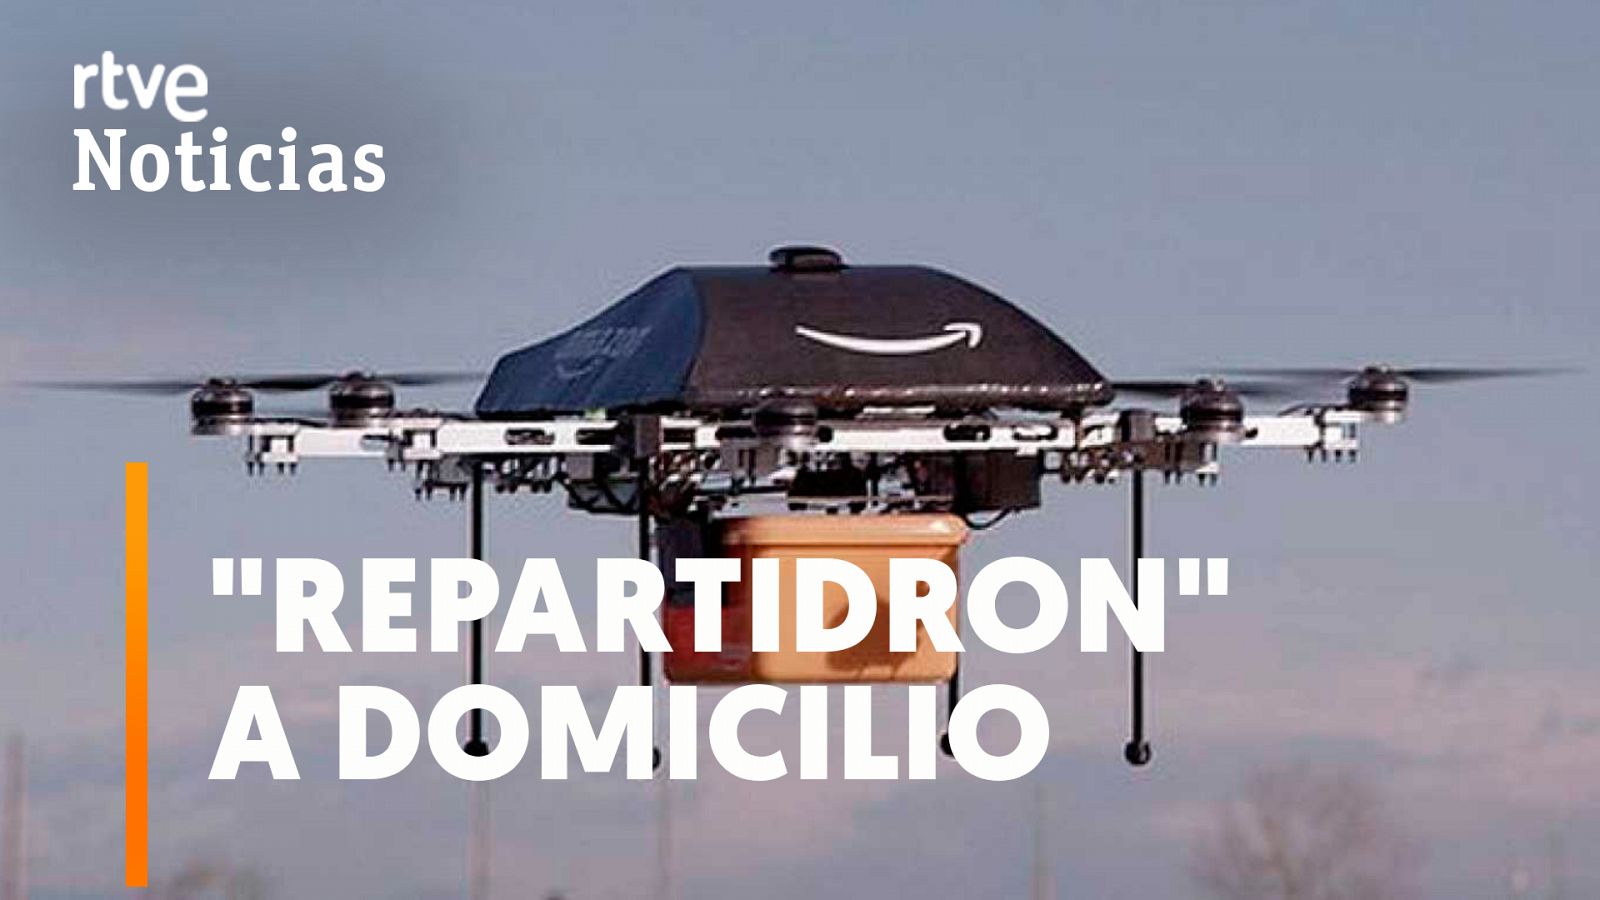 El dron repartidor: Amazon, Walmart o Google ya los fabrican para las compras a domicilio